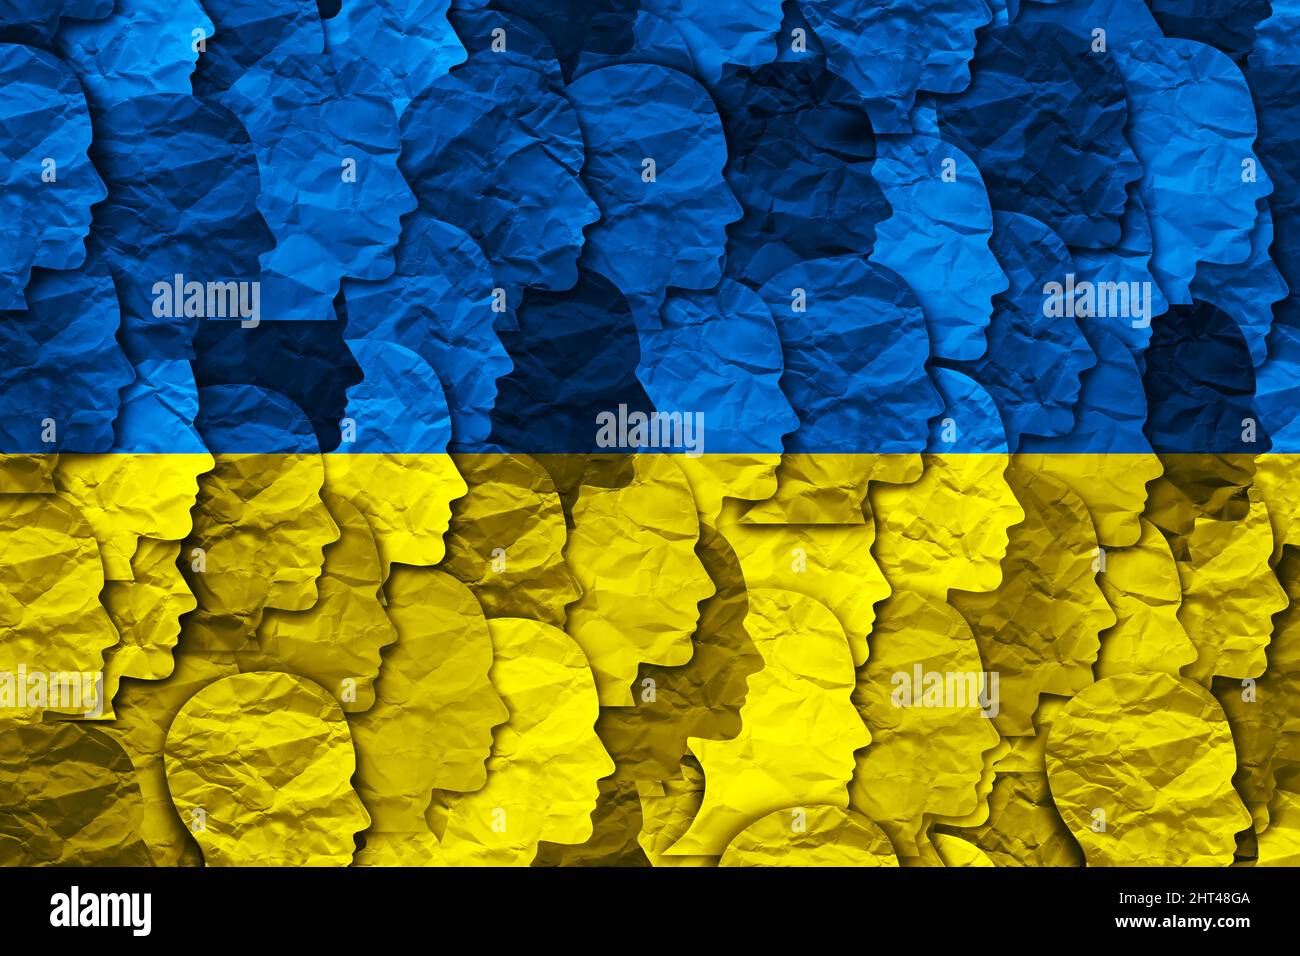 Ukrainisches Volkssymbol als Gruppe von Ukrainern zusammen mit der Flagge der Ukraine als osteuropäischen Land in einem Illustrationsstil von 3D. Stockfoto